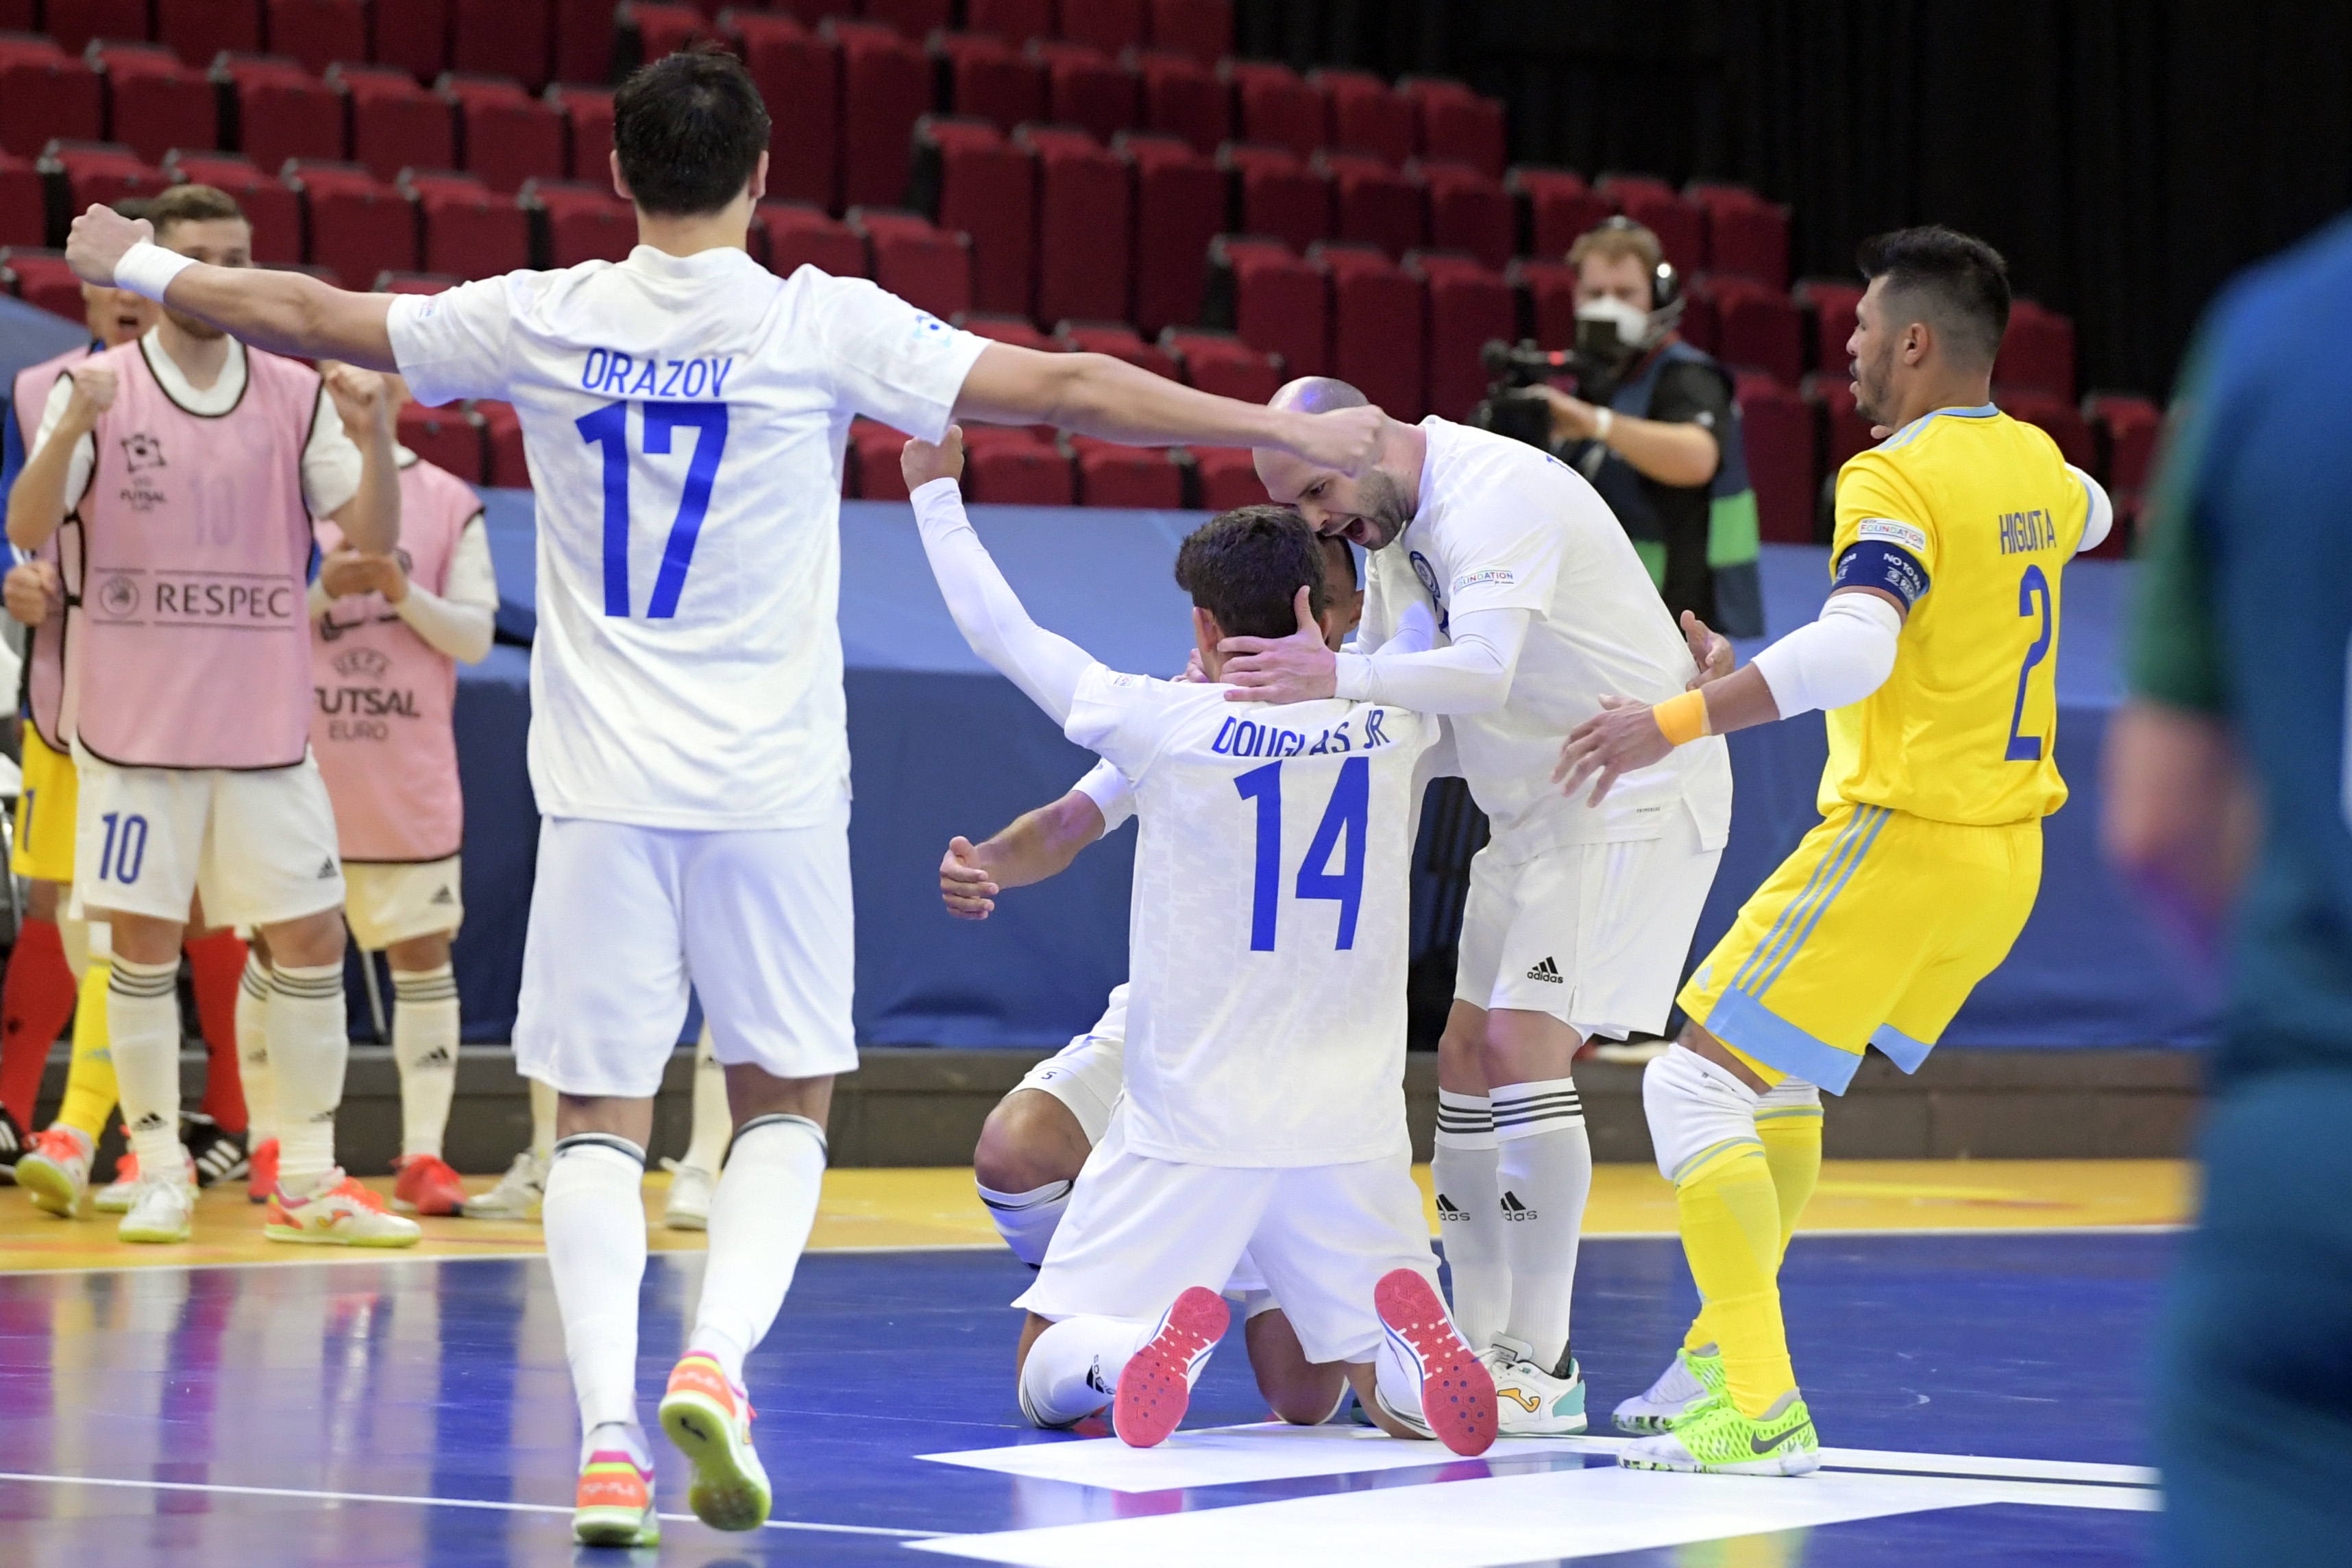 Douglas celebra un gol de Kazajistán con Orazov, Taynan e Higuita. Foto: UEFA